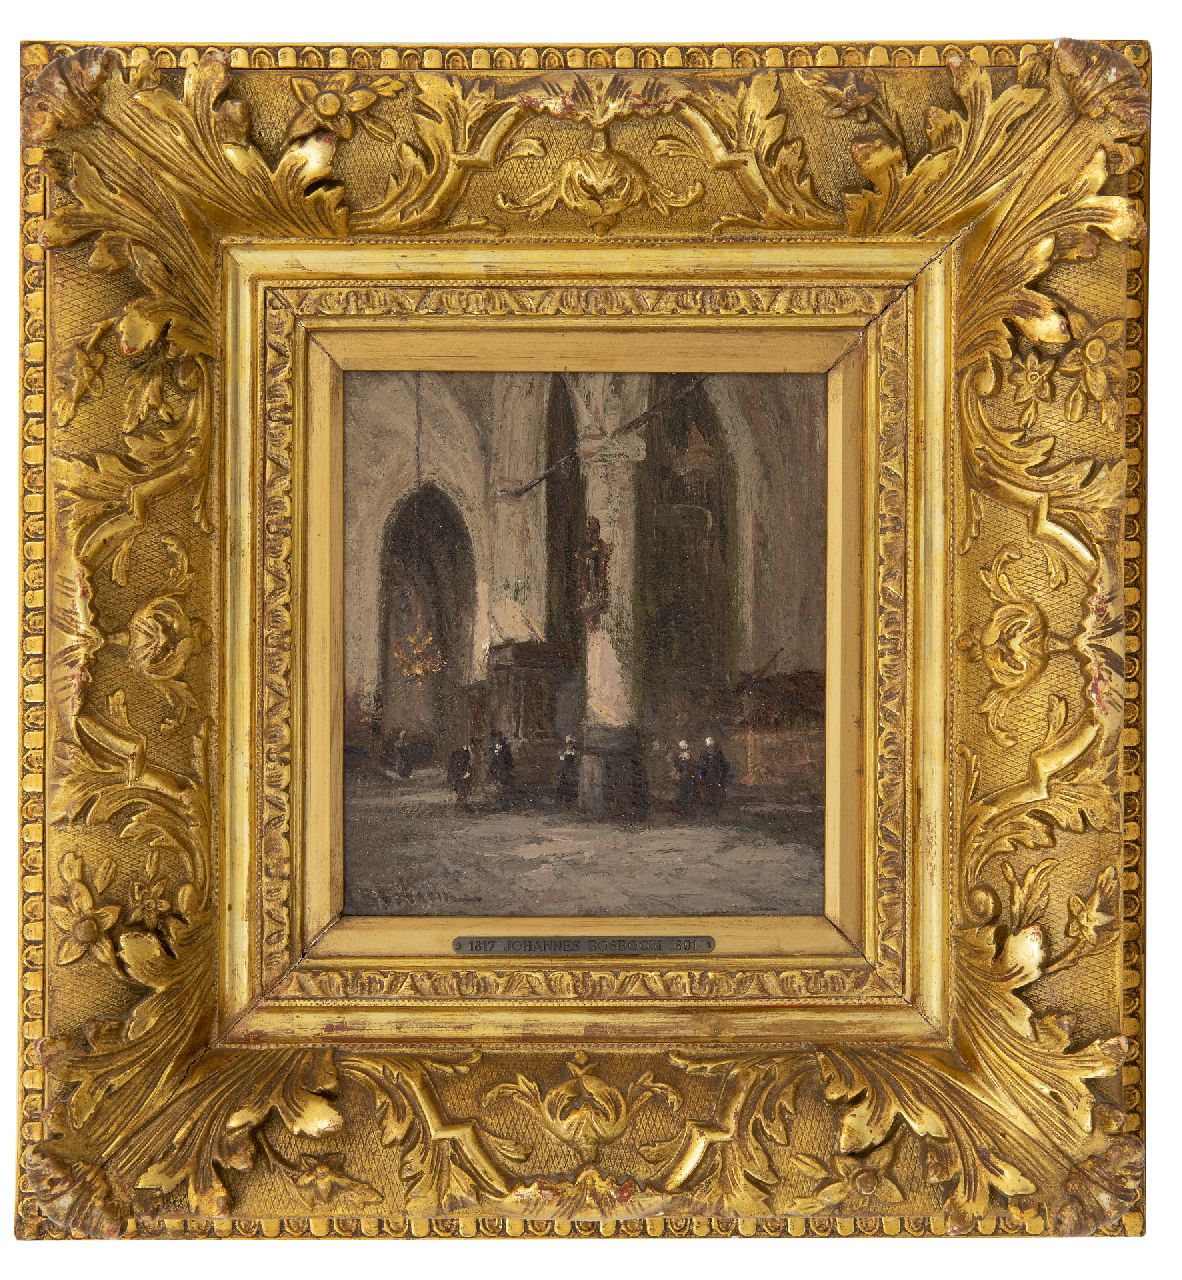 Bosboom J.  | Johannes Bosboom, Kerkinterieur, olieverf op paneel 18,3 x 15,6 cm, gesigneerd linksonder